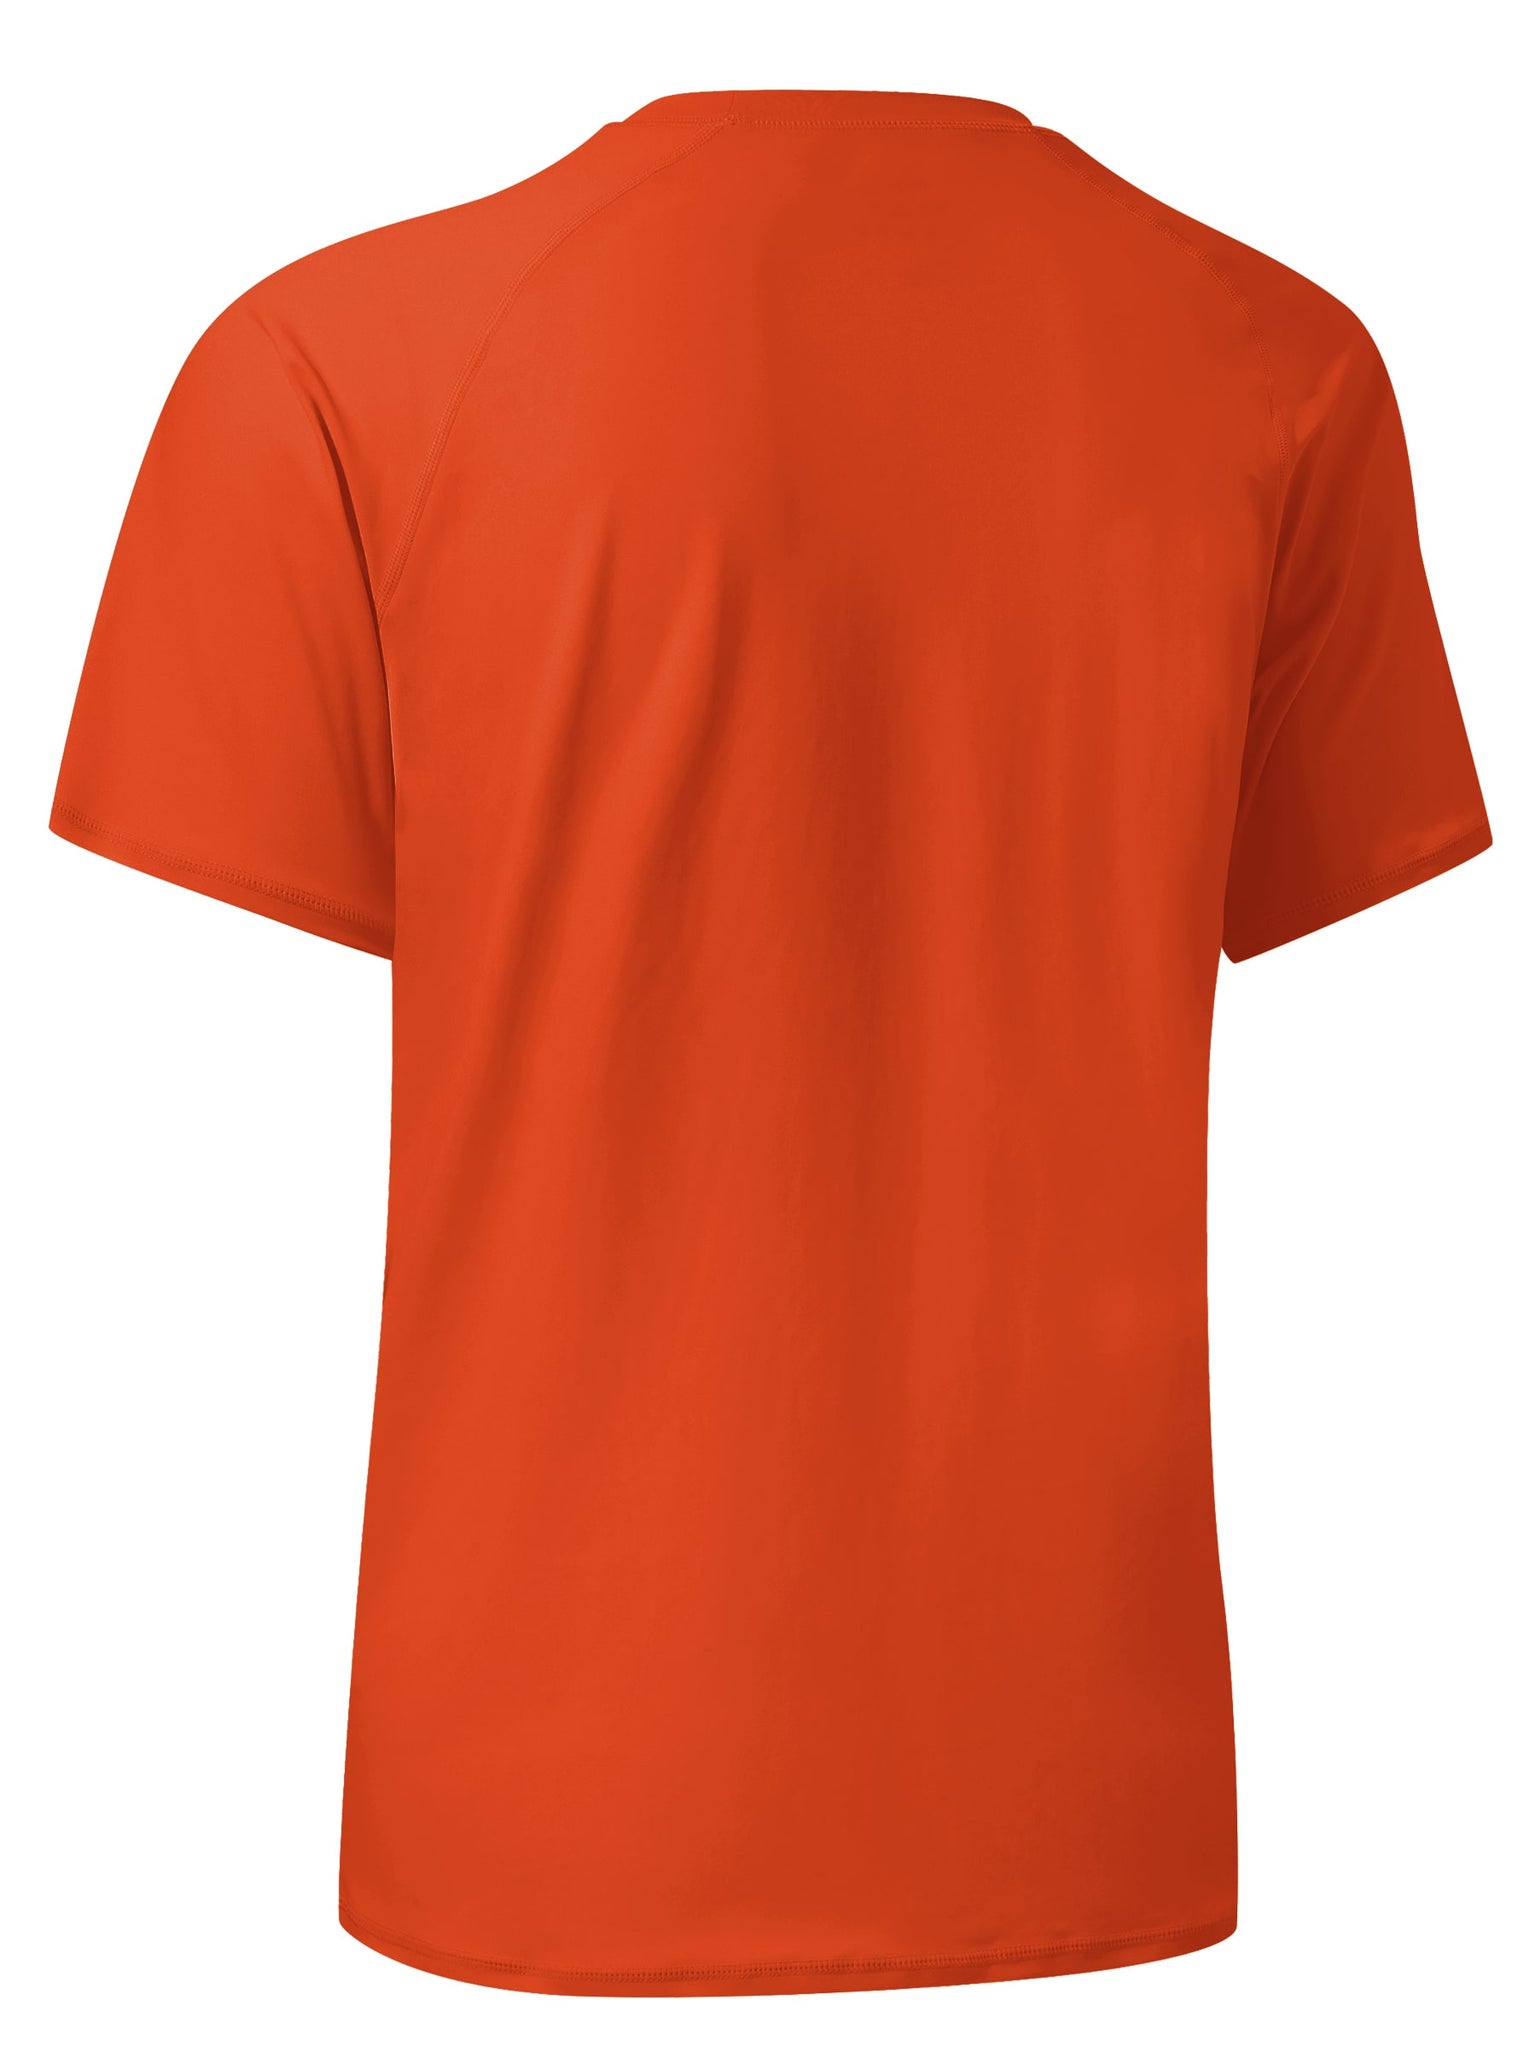 Men's Sun Protection Short Sleeve Shirt_Tangerine_detail2